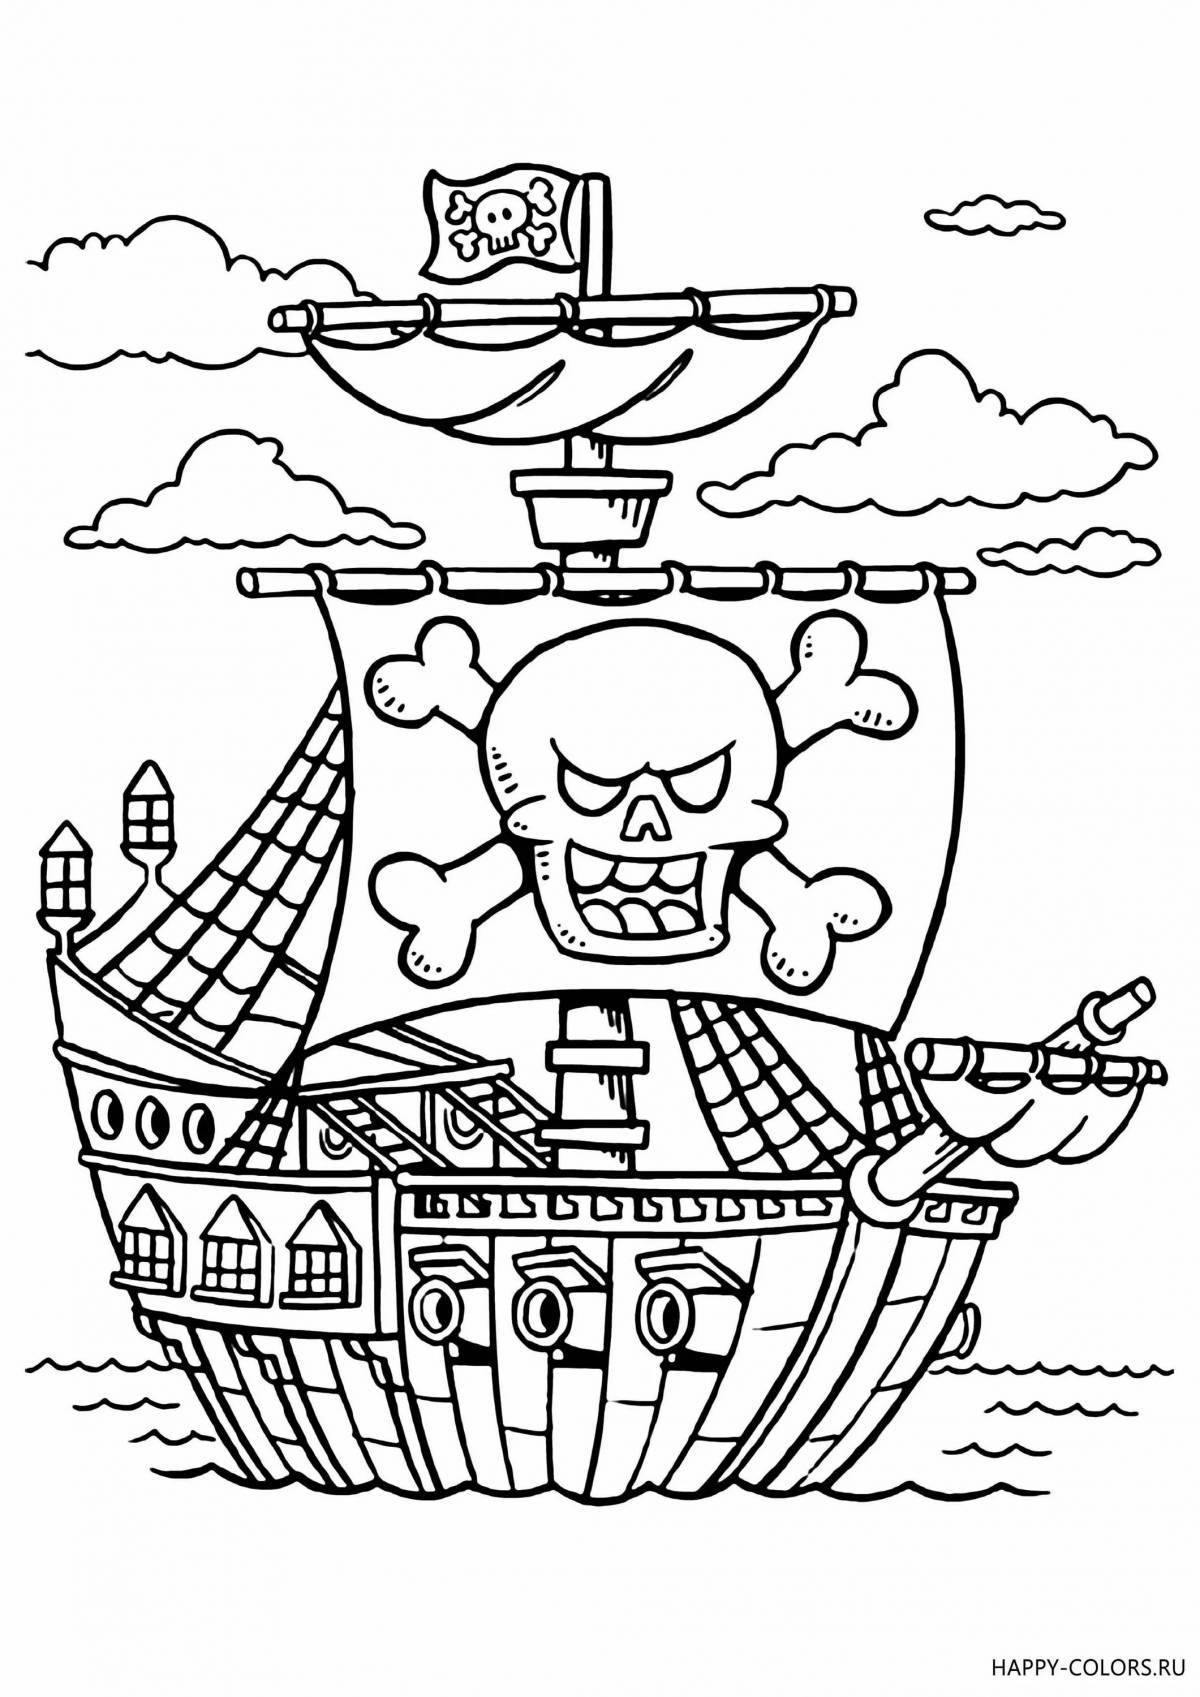 Увлекательная раскраска пиратского корабля для детей